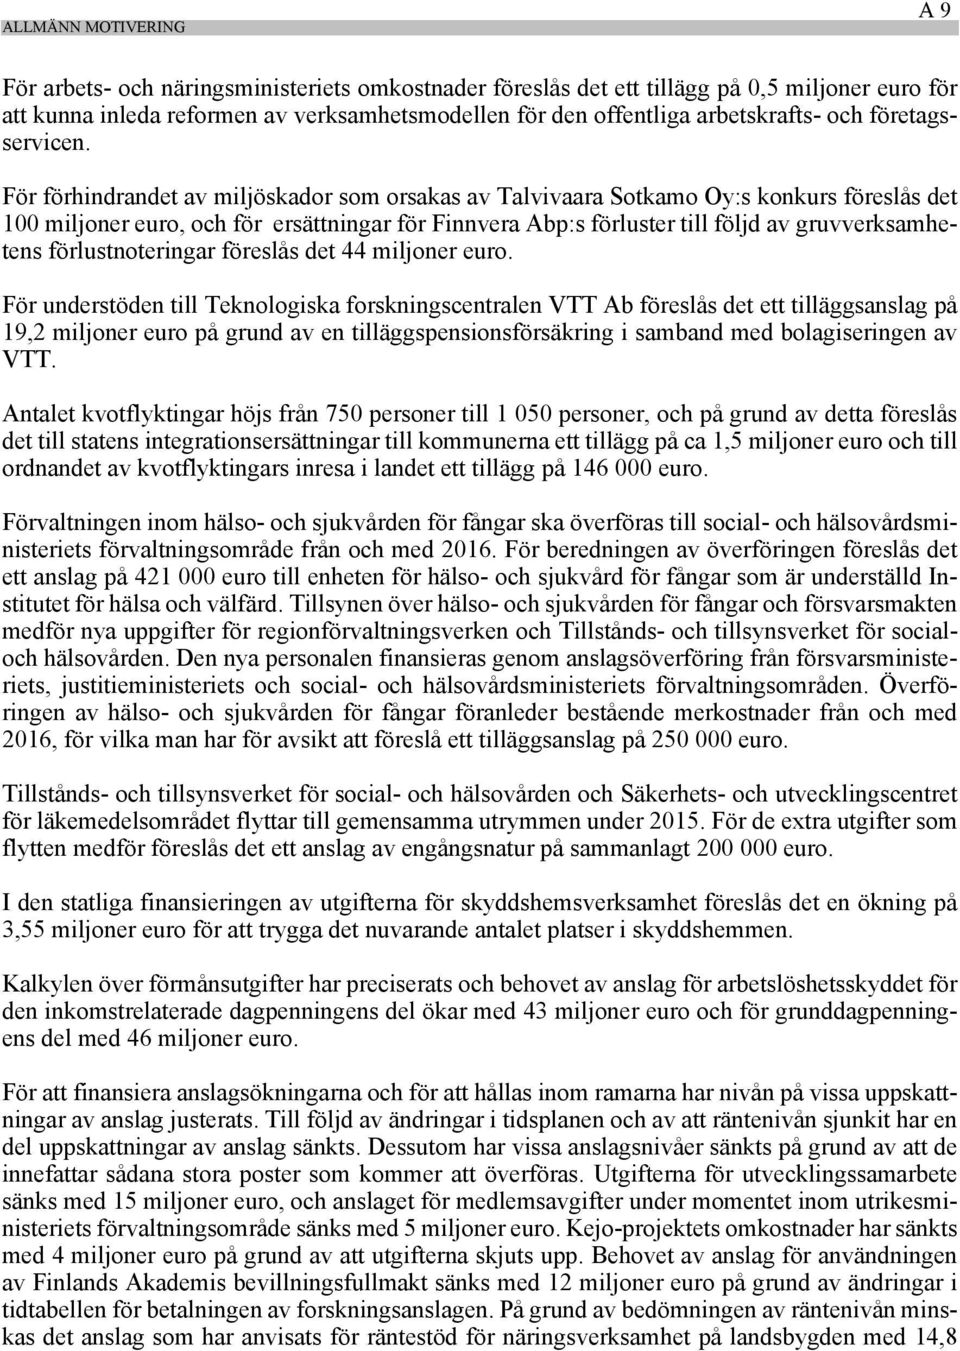 För förhindrandet av miljöskador som orsakas av Talvivaara Sotkamo Oy:s konkurs föreslås det 100 miljoner euro, och för ersättningar för Finnvera Abp:s förluster till följd av gruvverksamhetens